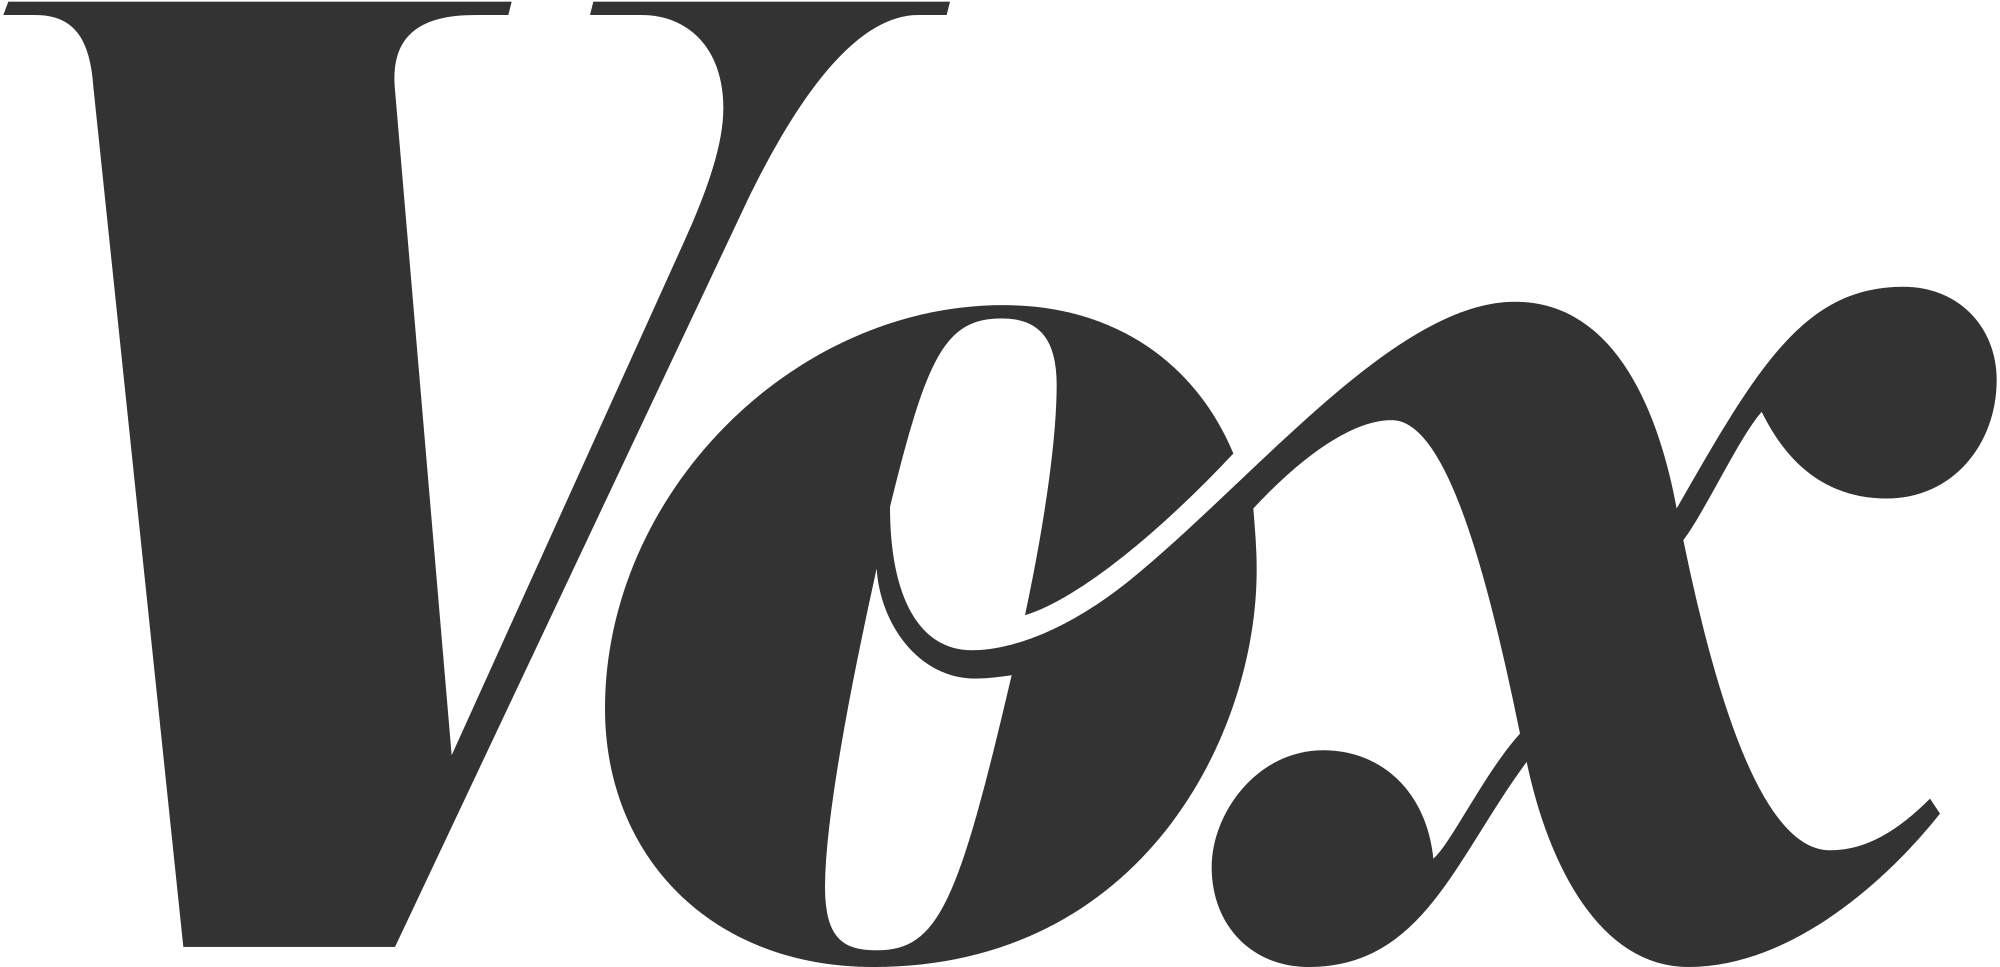 typografi - Vilken typsnittskategori är Vox-logotypen? - Grafisk design ...